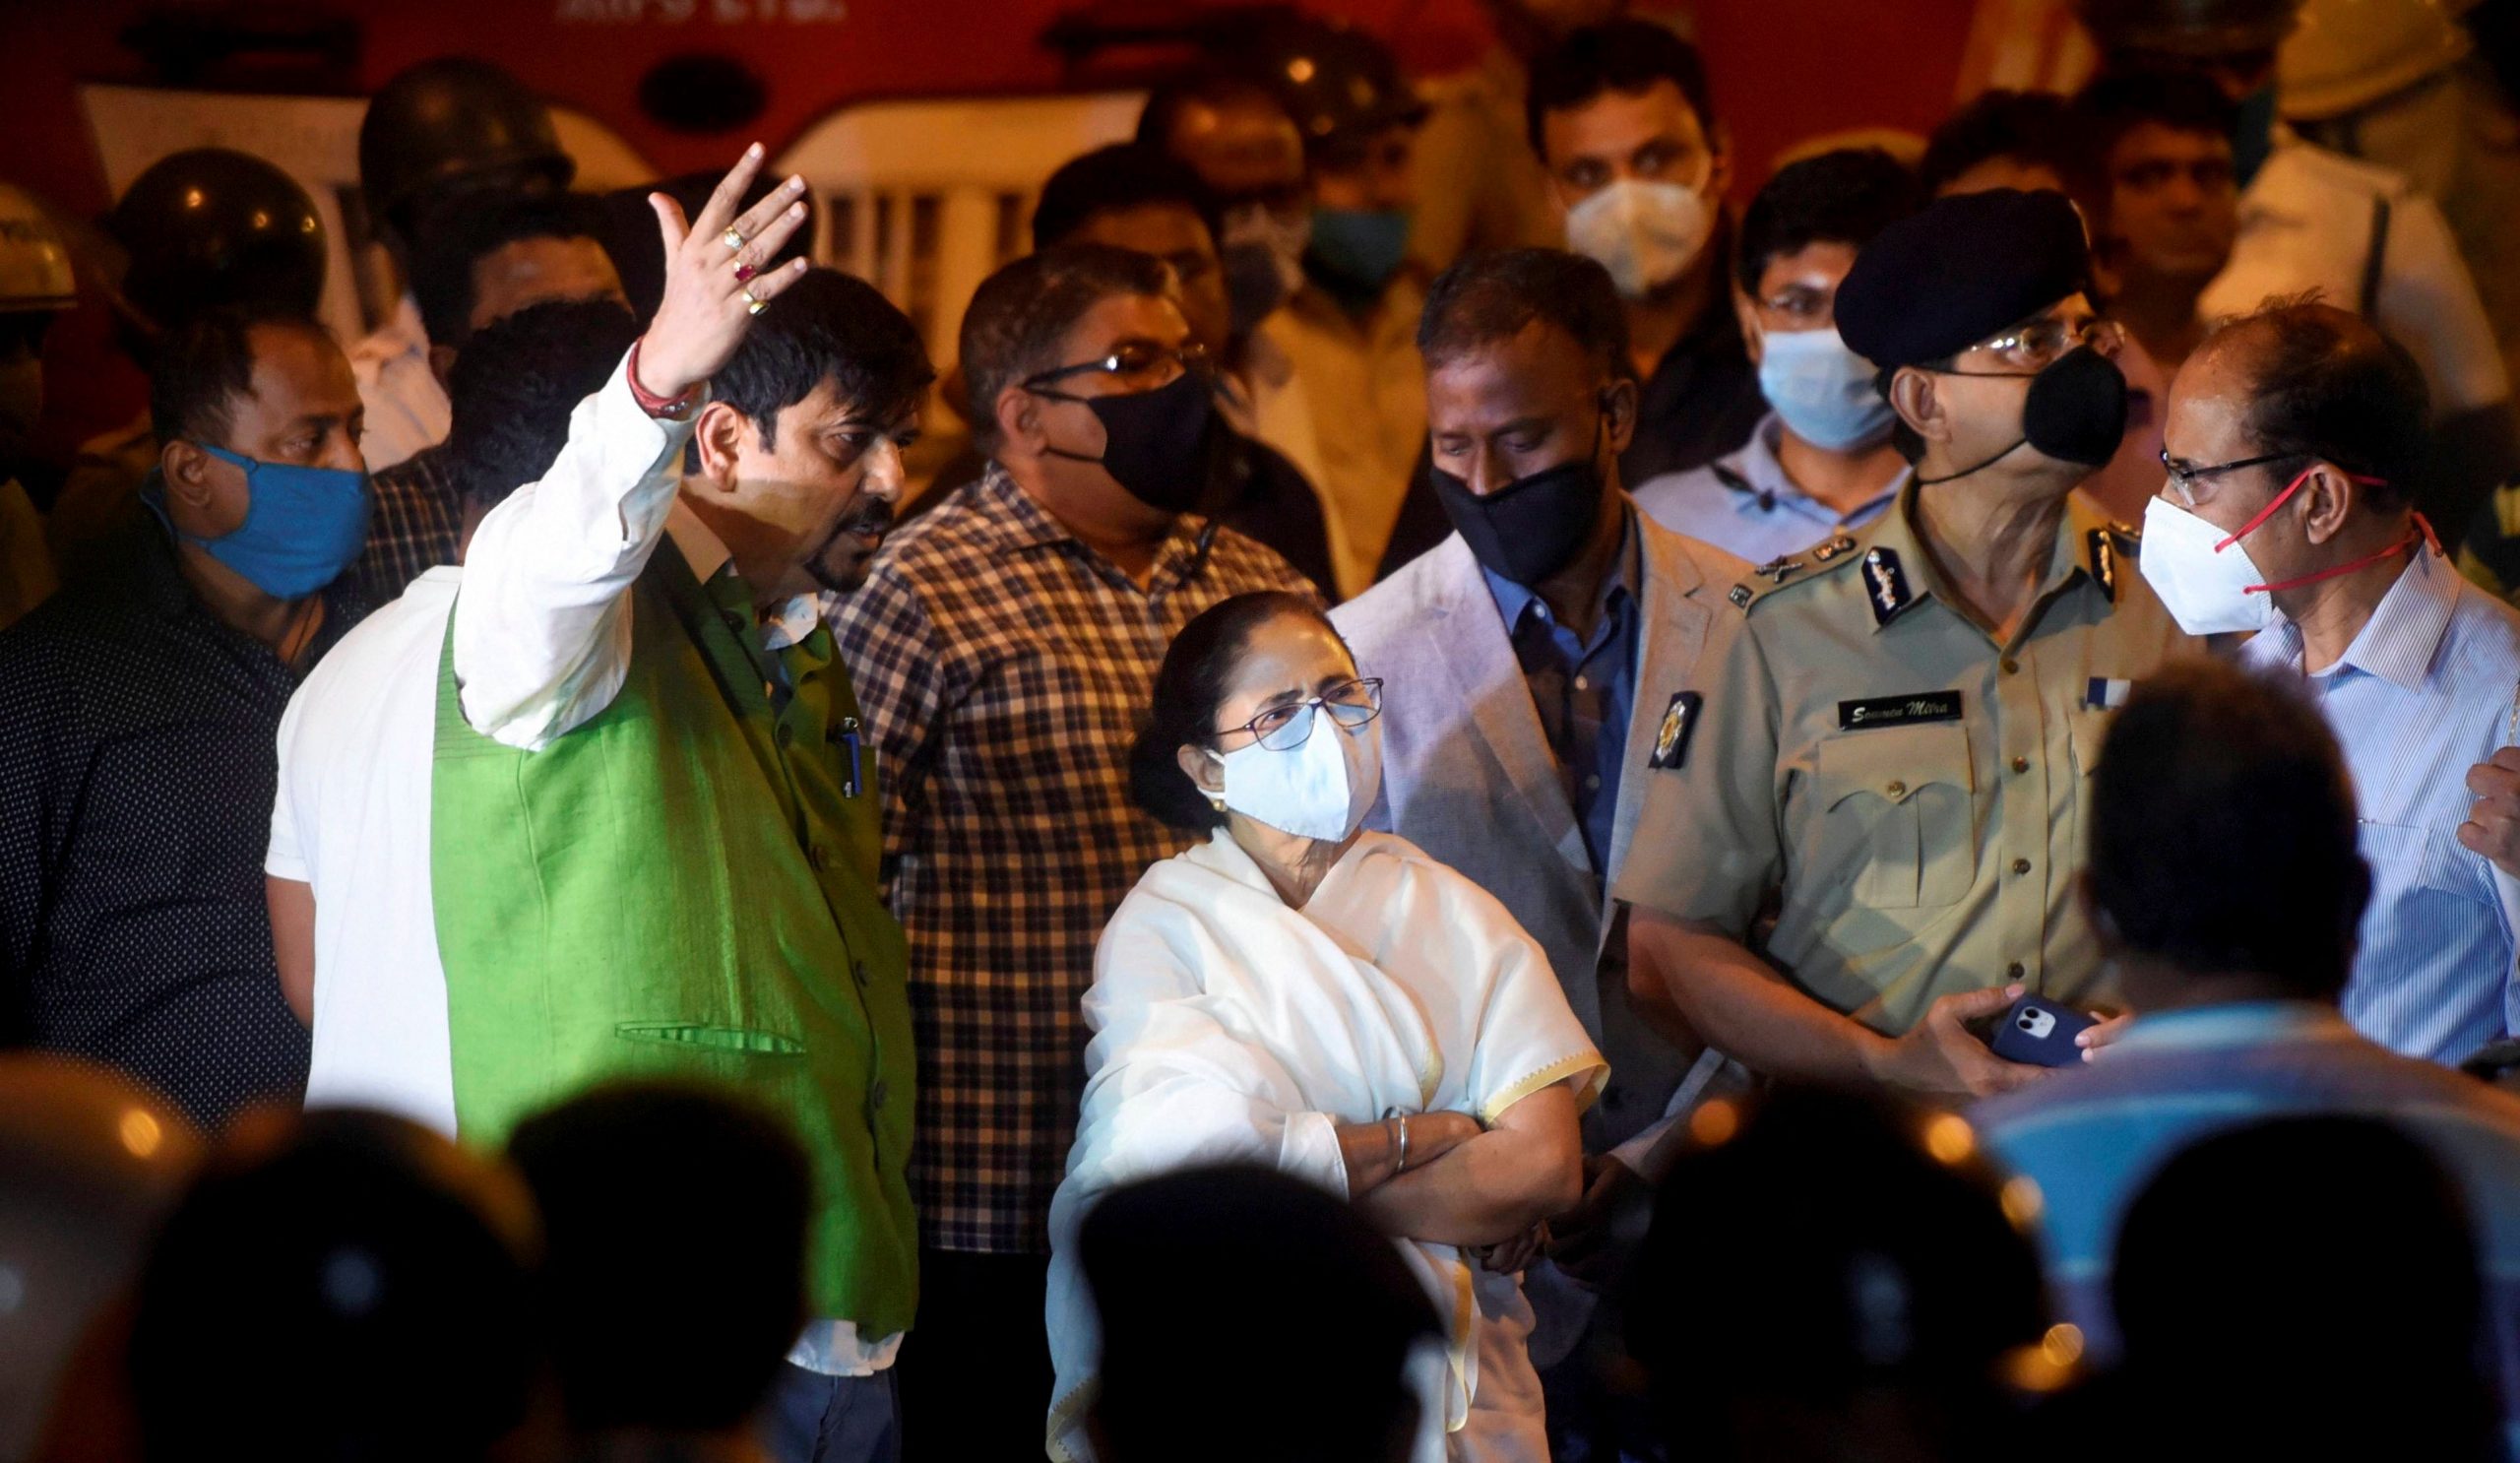 BJP attacks Mamata Banerjee over Kolkata fire, says ‘Pishi’ shifts blame during tragedy